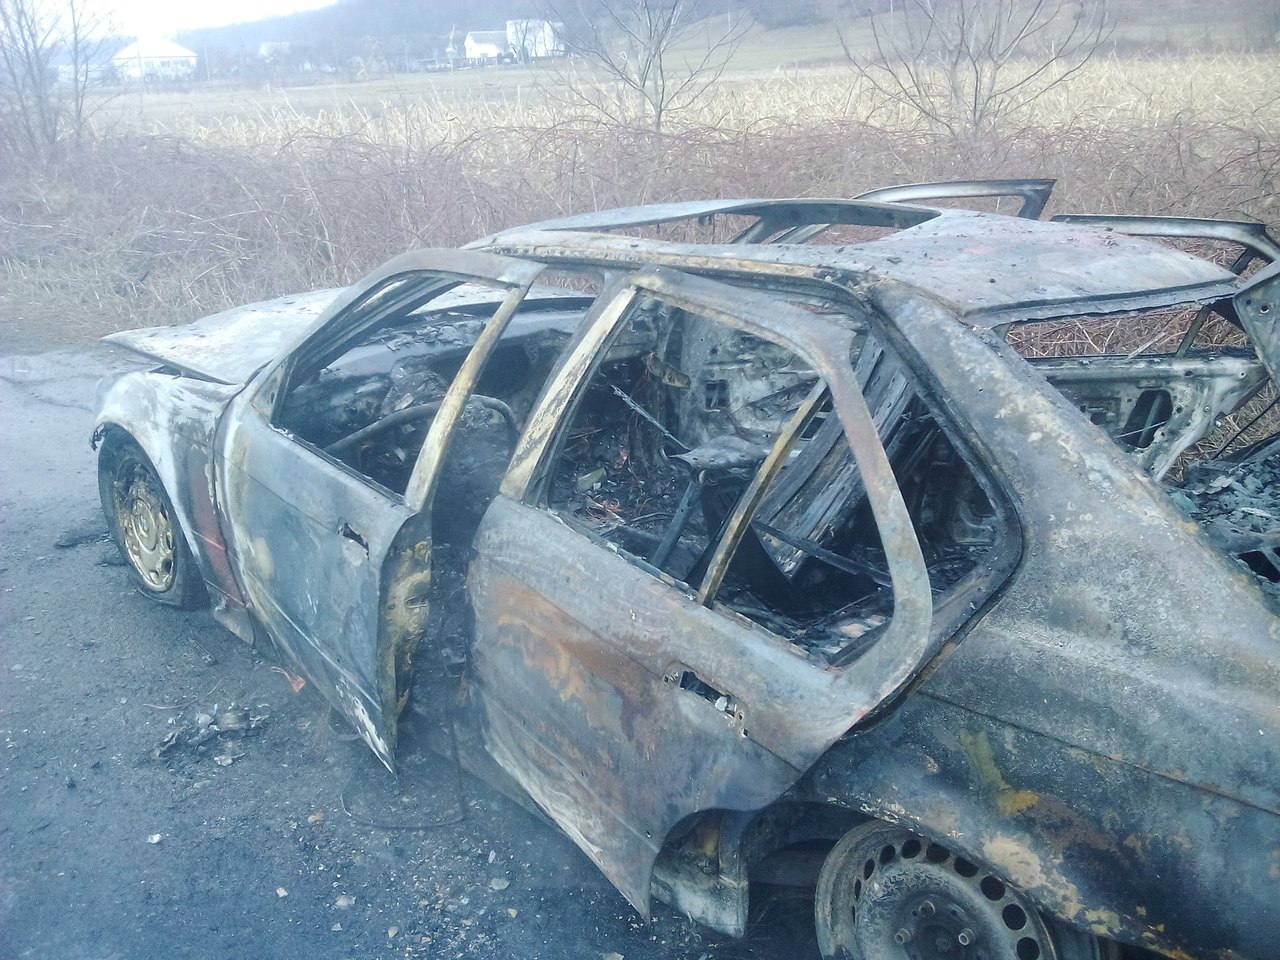 сегодня, 28 февраля, между селами Белки и Имстичево Иршавского района (Закарпатская область) на ходу загорелась BMW 1997 года выпуска.